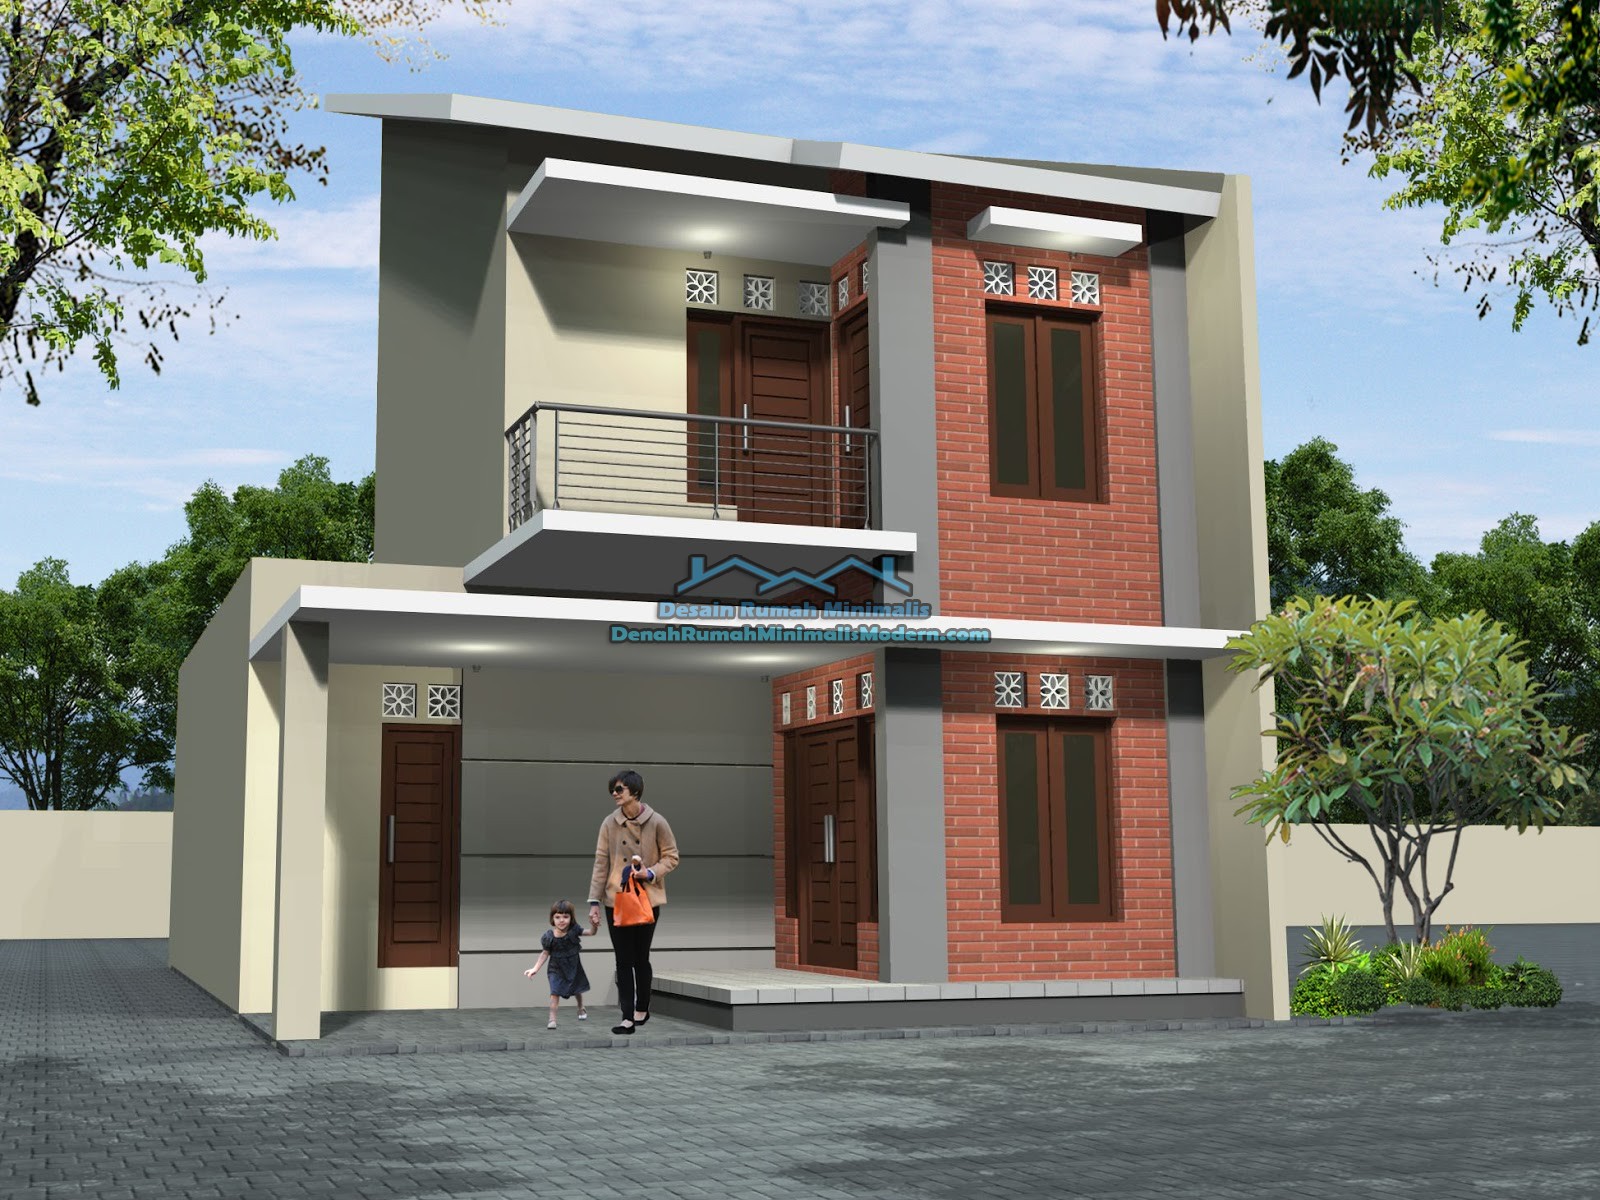 50 Model Desain Rumah Minimalis 2 Lantai  Desainrumahnya.com